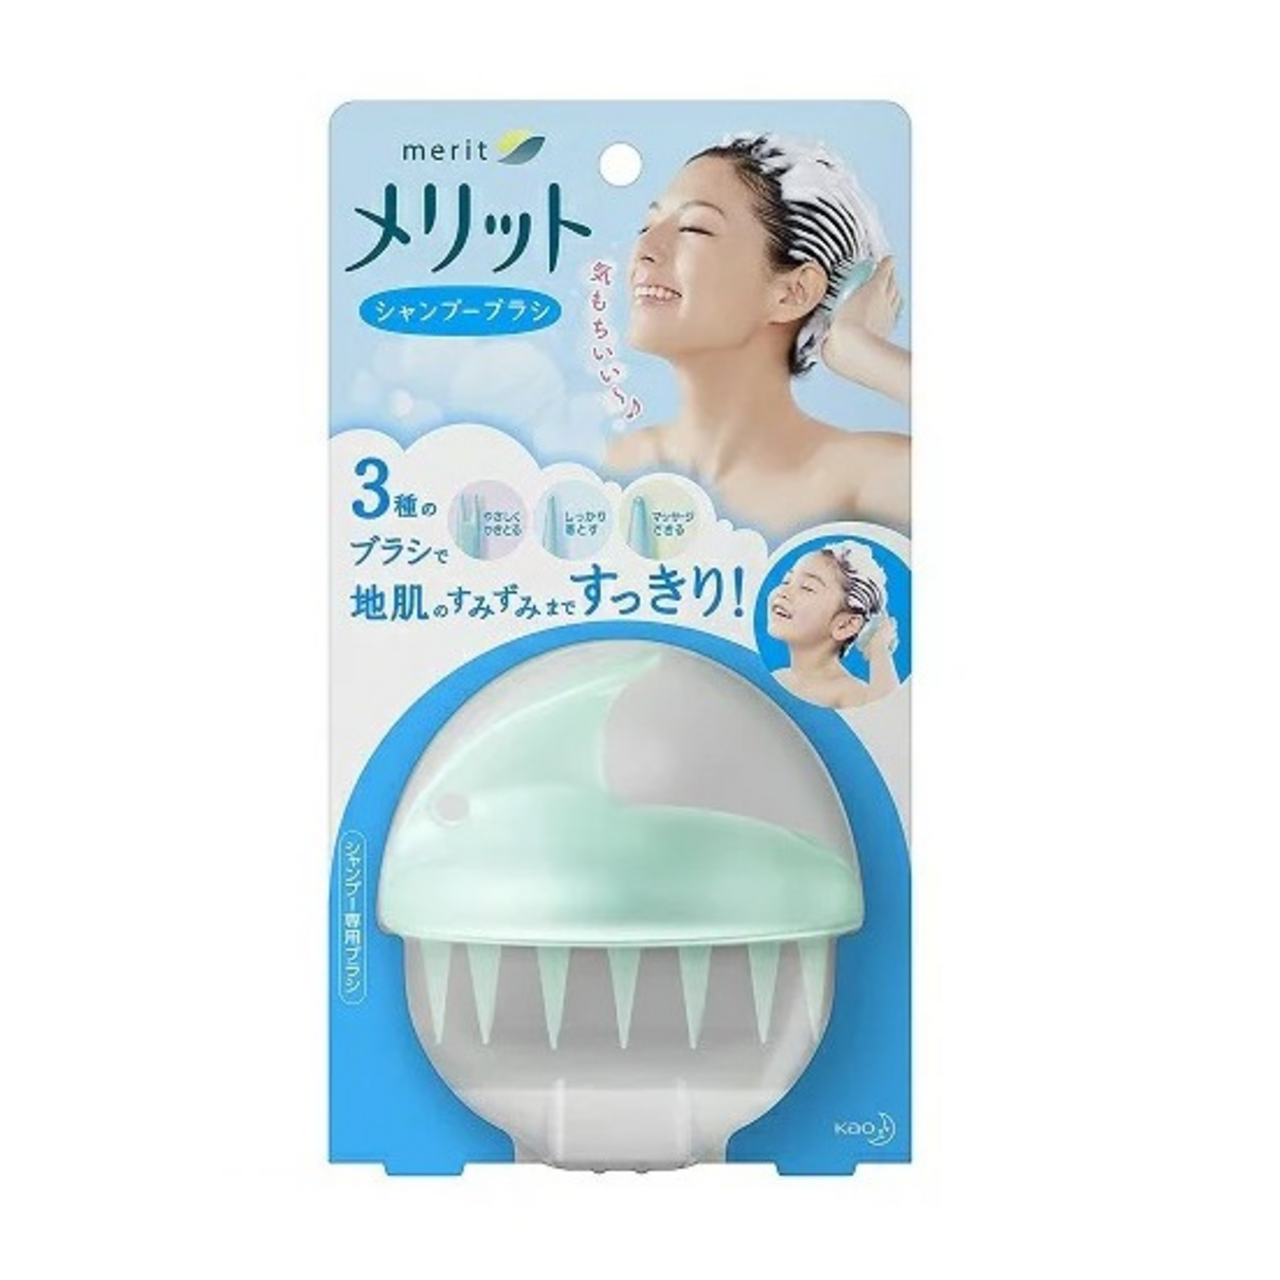 Kao Merit Shampoo Brush. Японская щетка для мытья волос. Массажер для мытья головы. Массажная щетка для мытья головы.